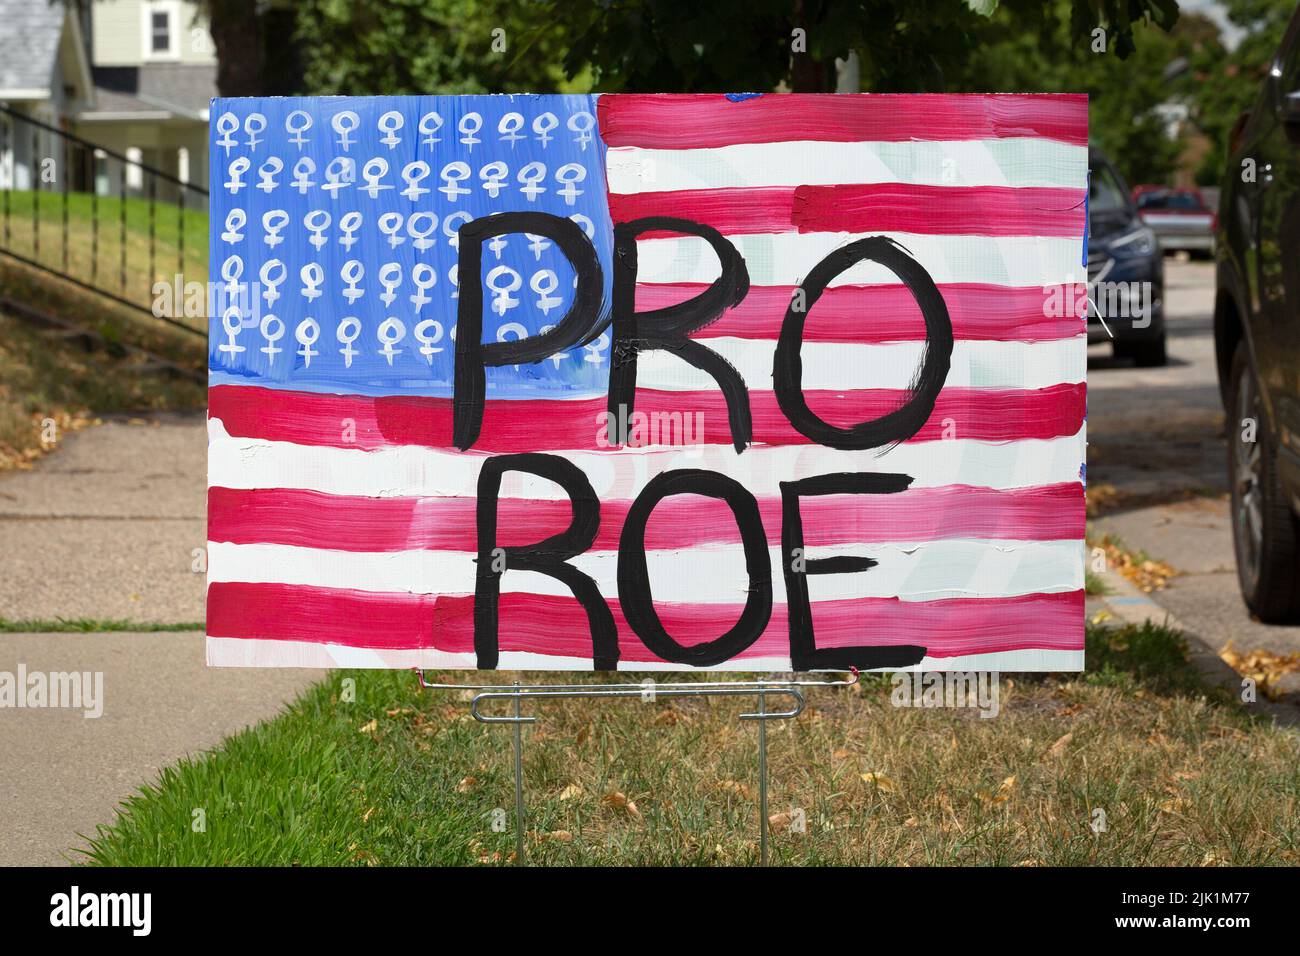 Ein amerikanisches Flaggen-Motiv protestiert gegen die Entscheidung des Obersten Gerichtshofs der USA, die Entscheidung von Roe v. Wade über das Recht auf Abtreibung zu stürzen. Stockfoto